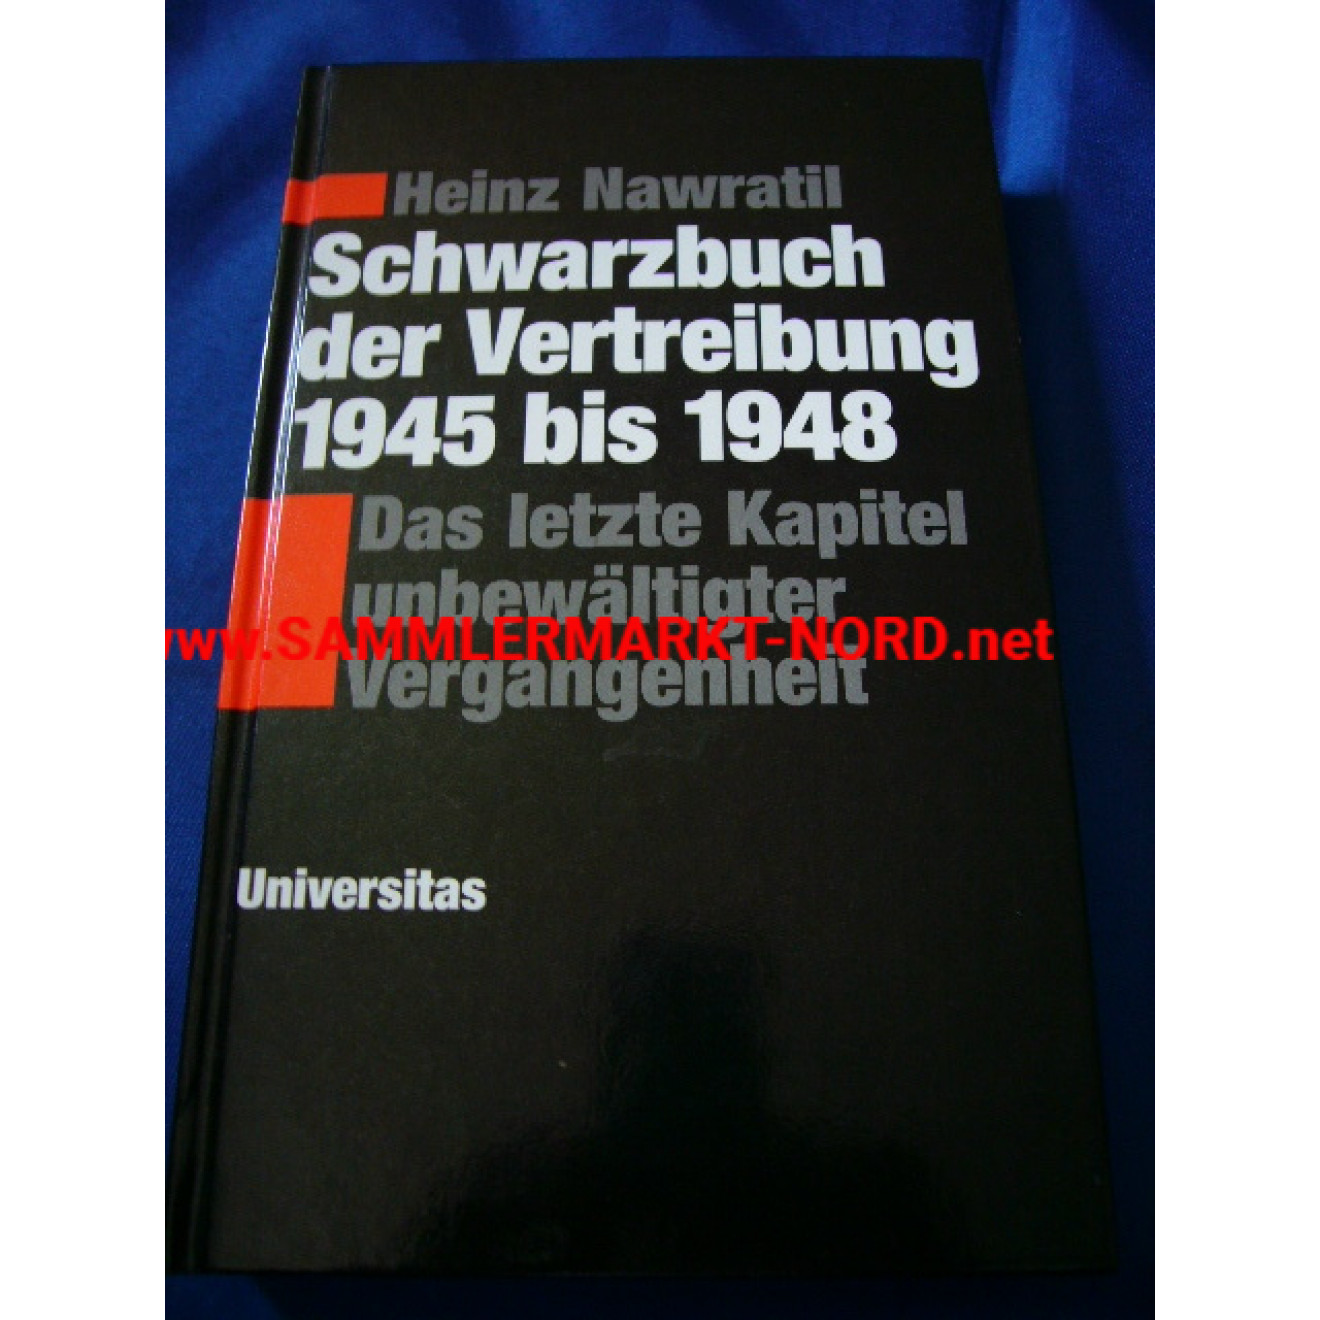 Schwarzbuch der Vertreibung 1945 - 1948